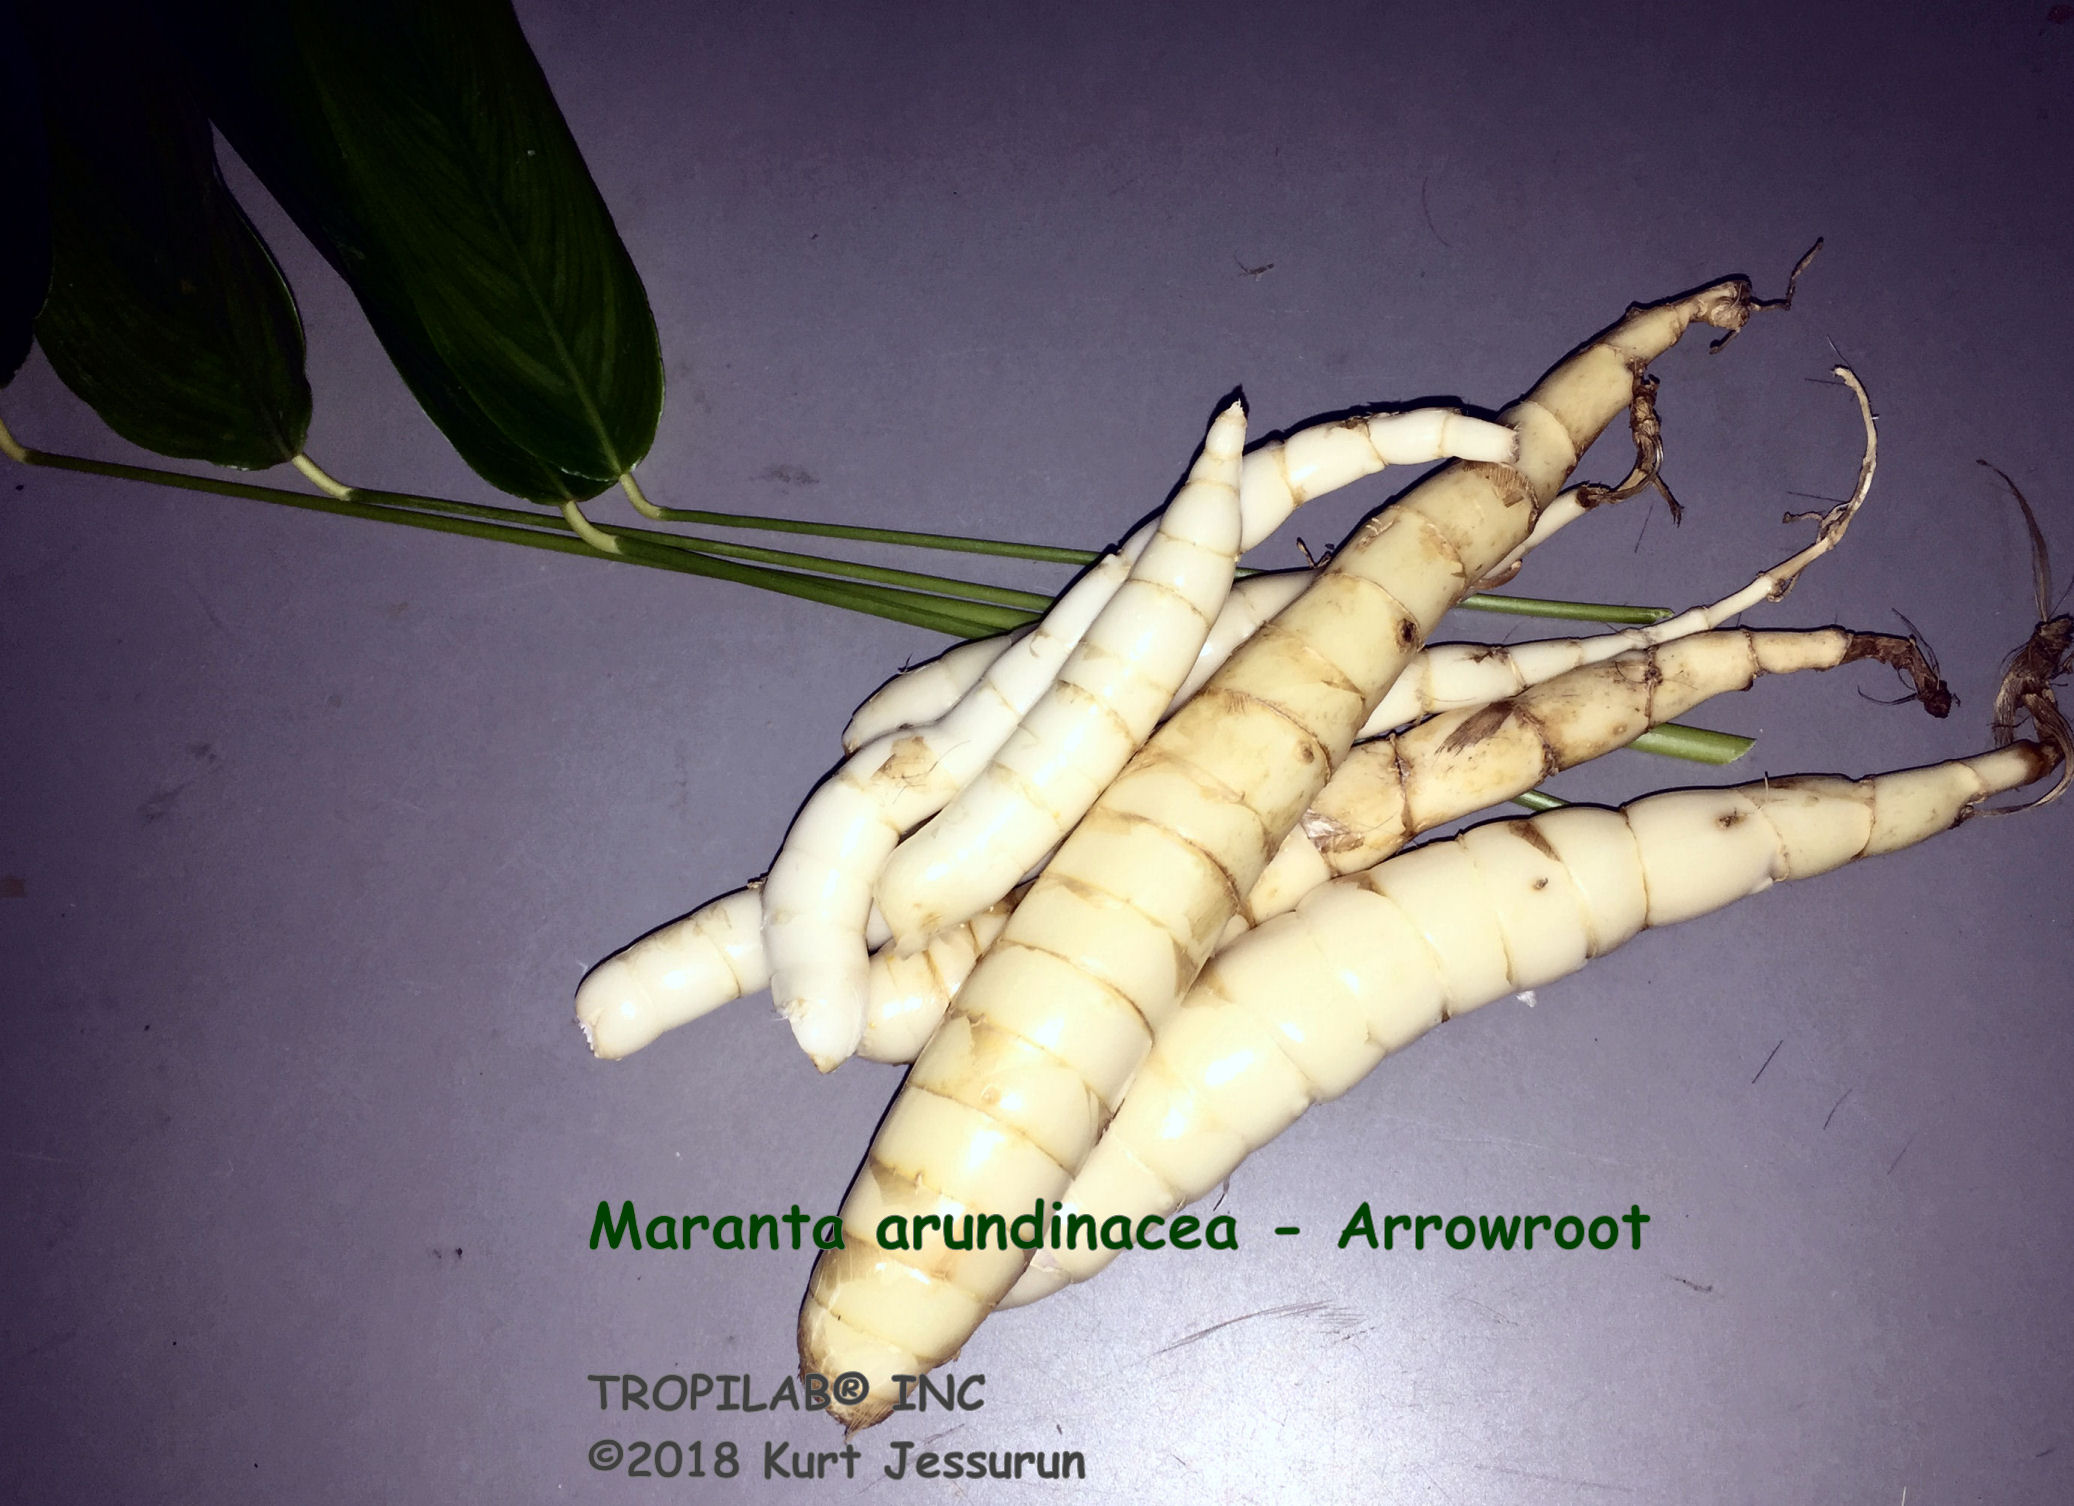 Maranta arundinacea - Arrowroot